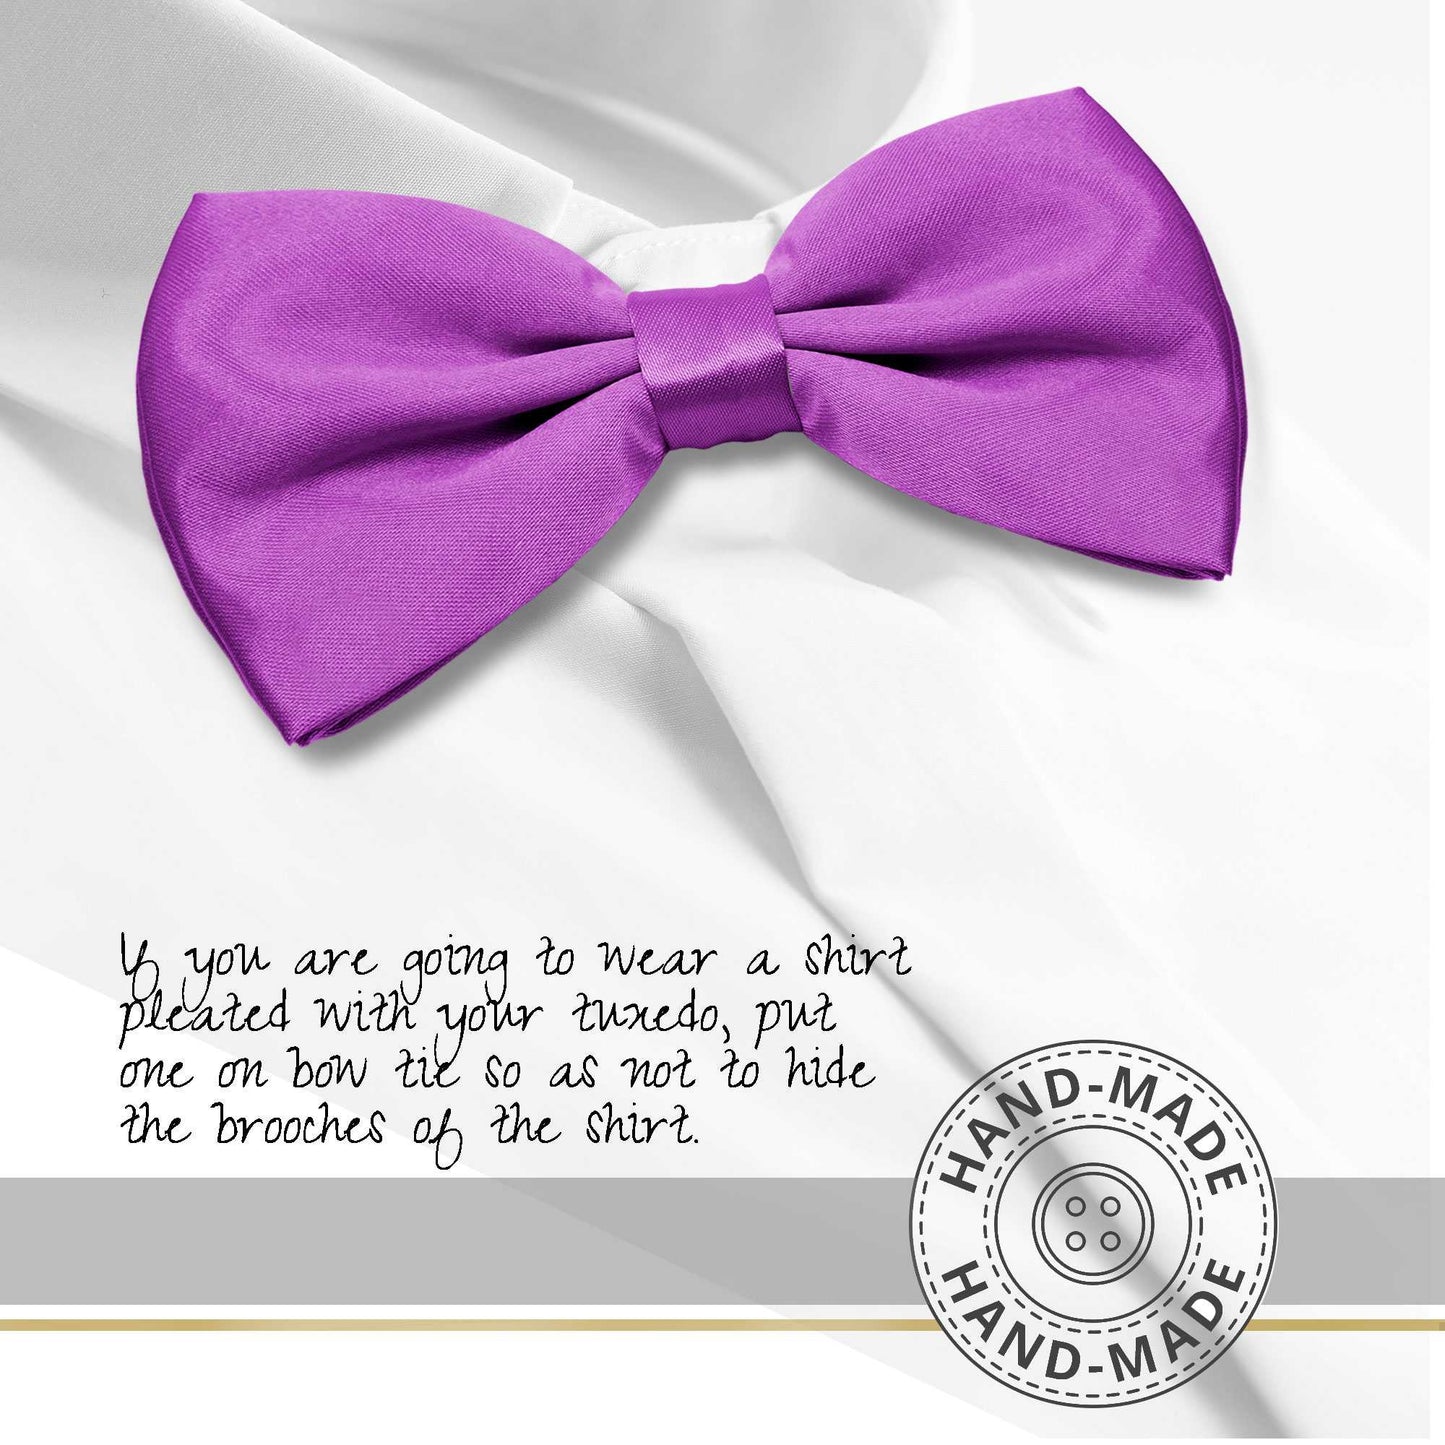 Pajarita Elegante para Hombre de color Purpura Diseño Unicolor con Cierre de Gancho Clip Ajustable, 12cm x 6cm, Celebraciones, Fiestas, Trabajo, Bodas y Eventos